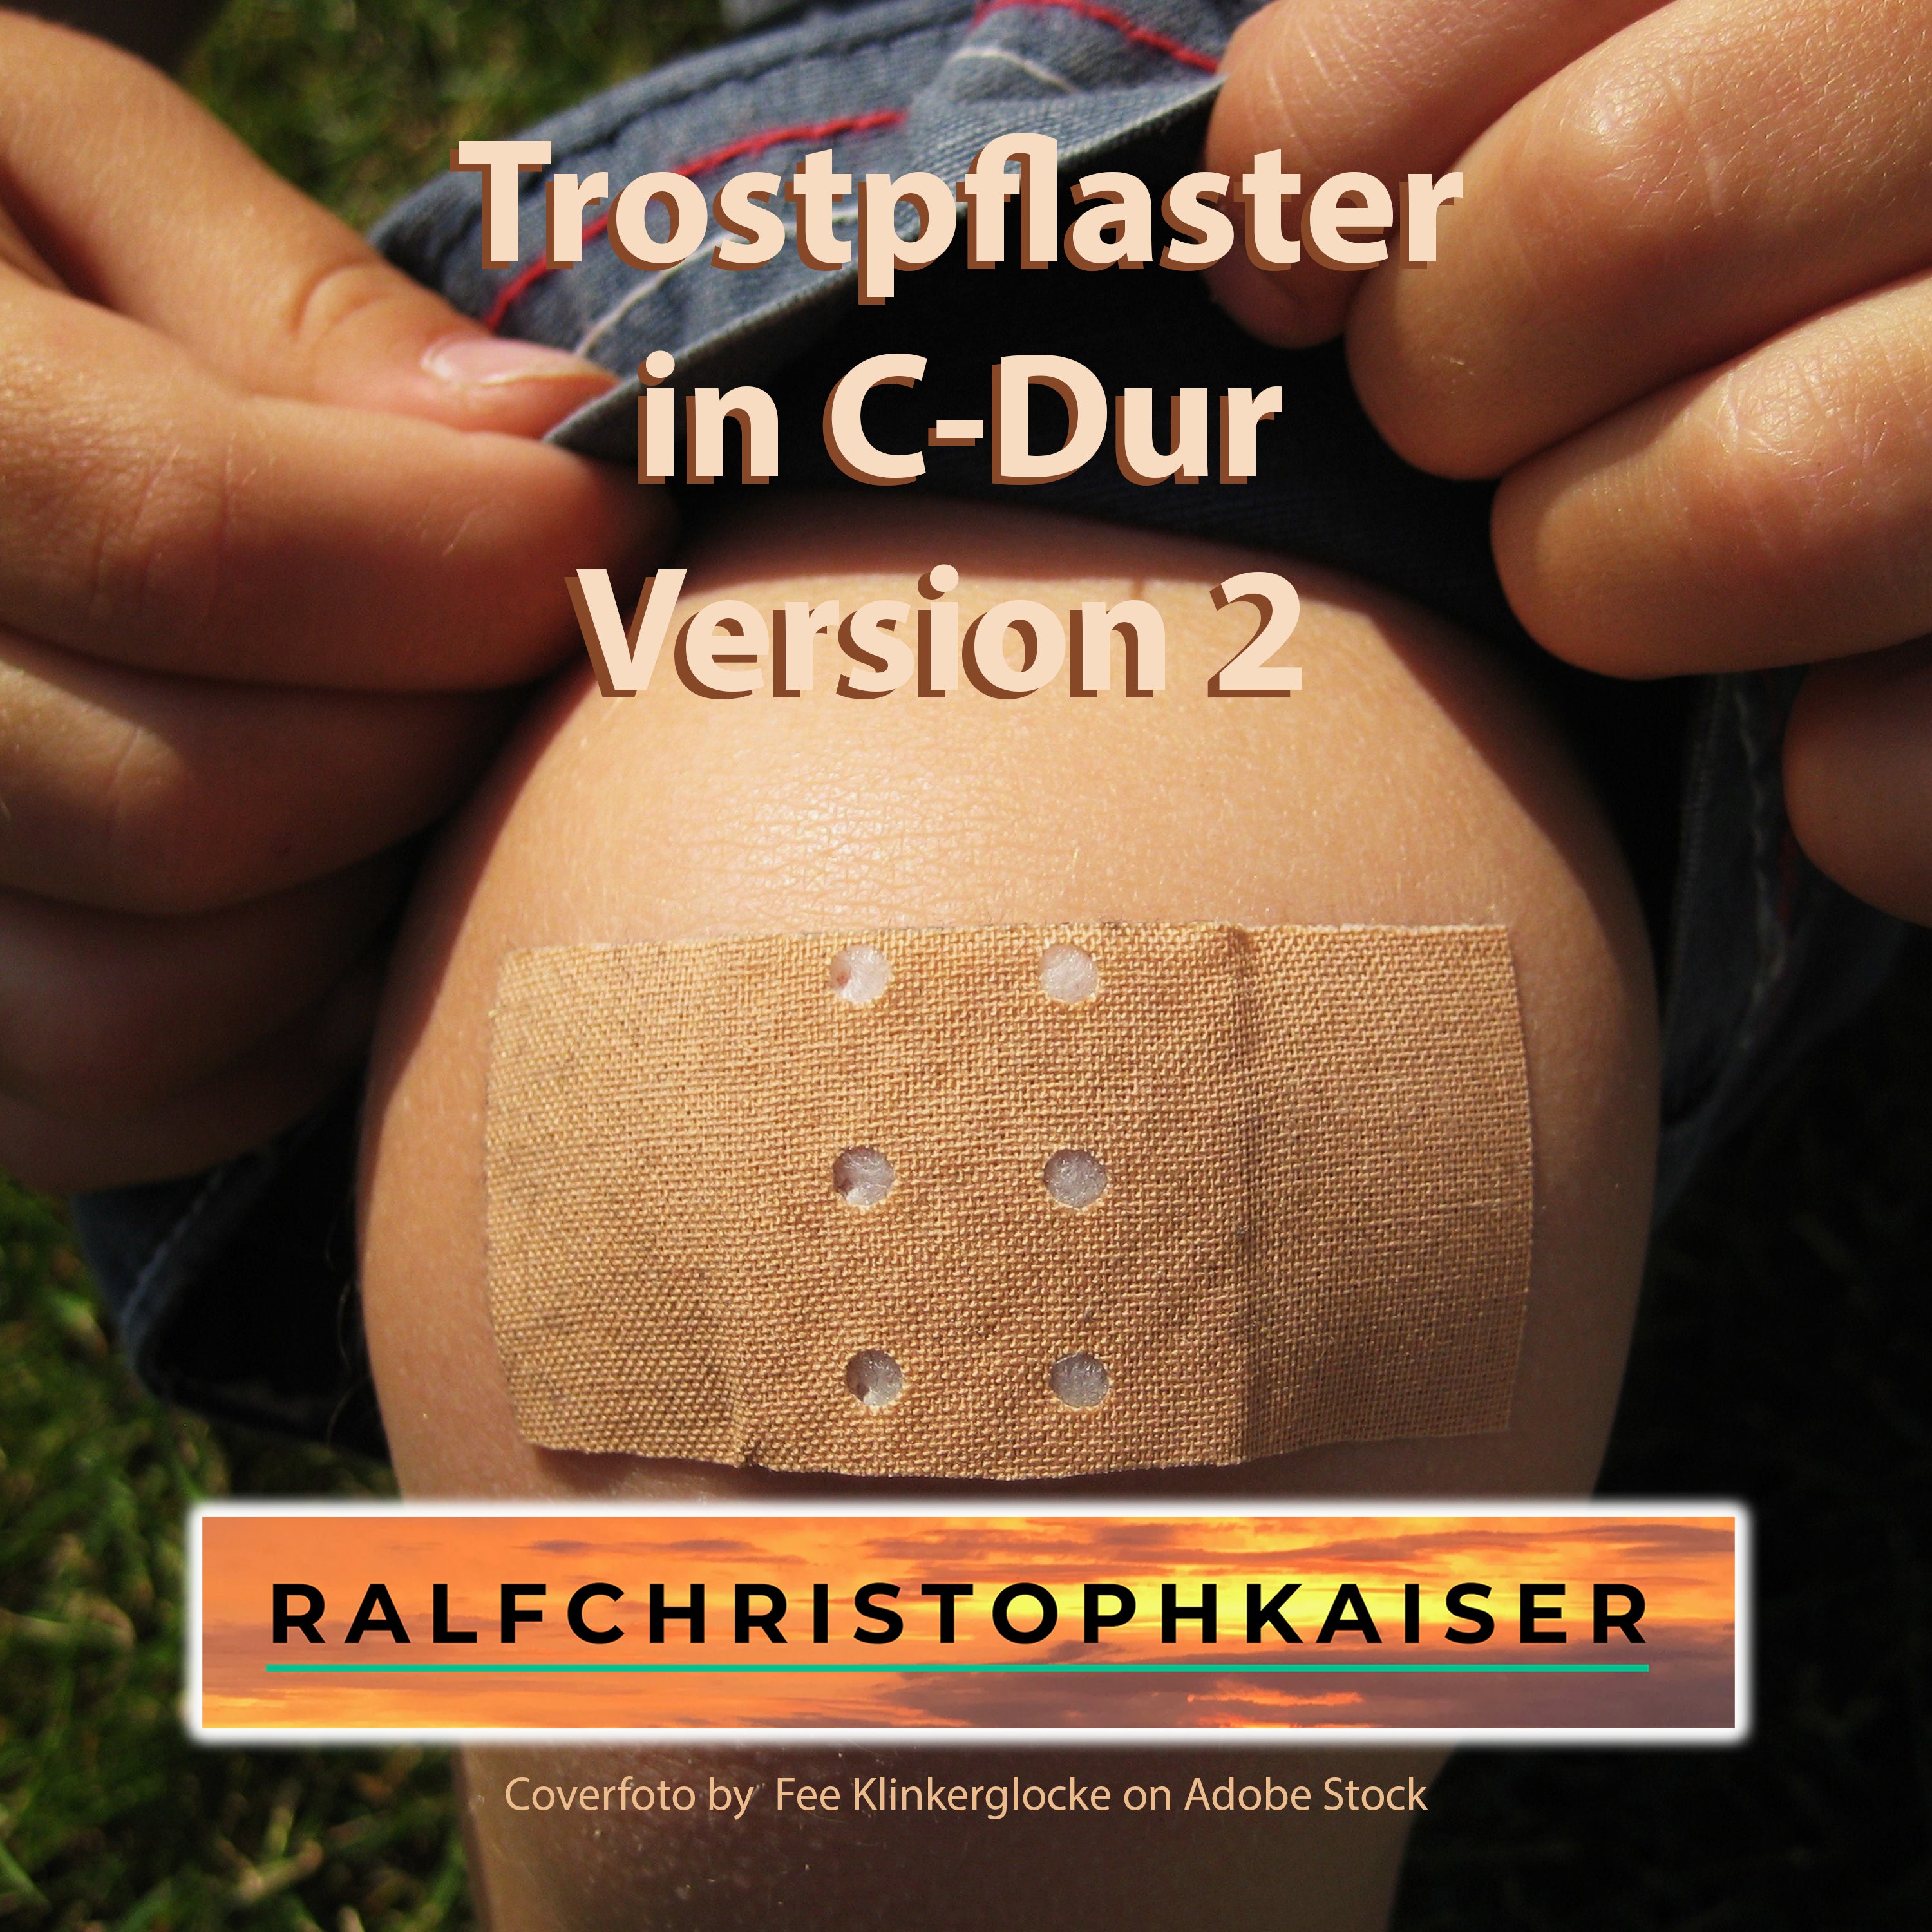 Live Recodring Session on Periscope vom 21.08.2019 "Trostpflaster" in C-Dur Version 2 - ralfchristophkaiser.com Musik und Noten